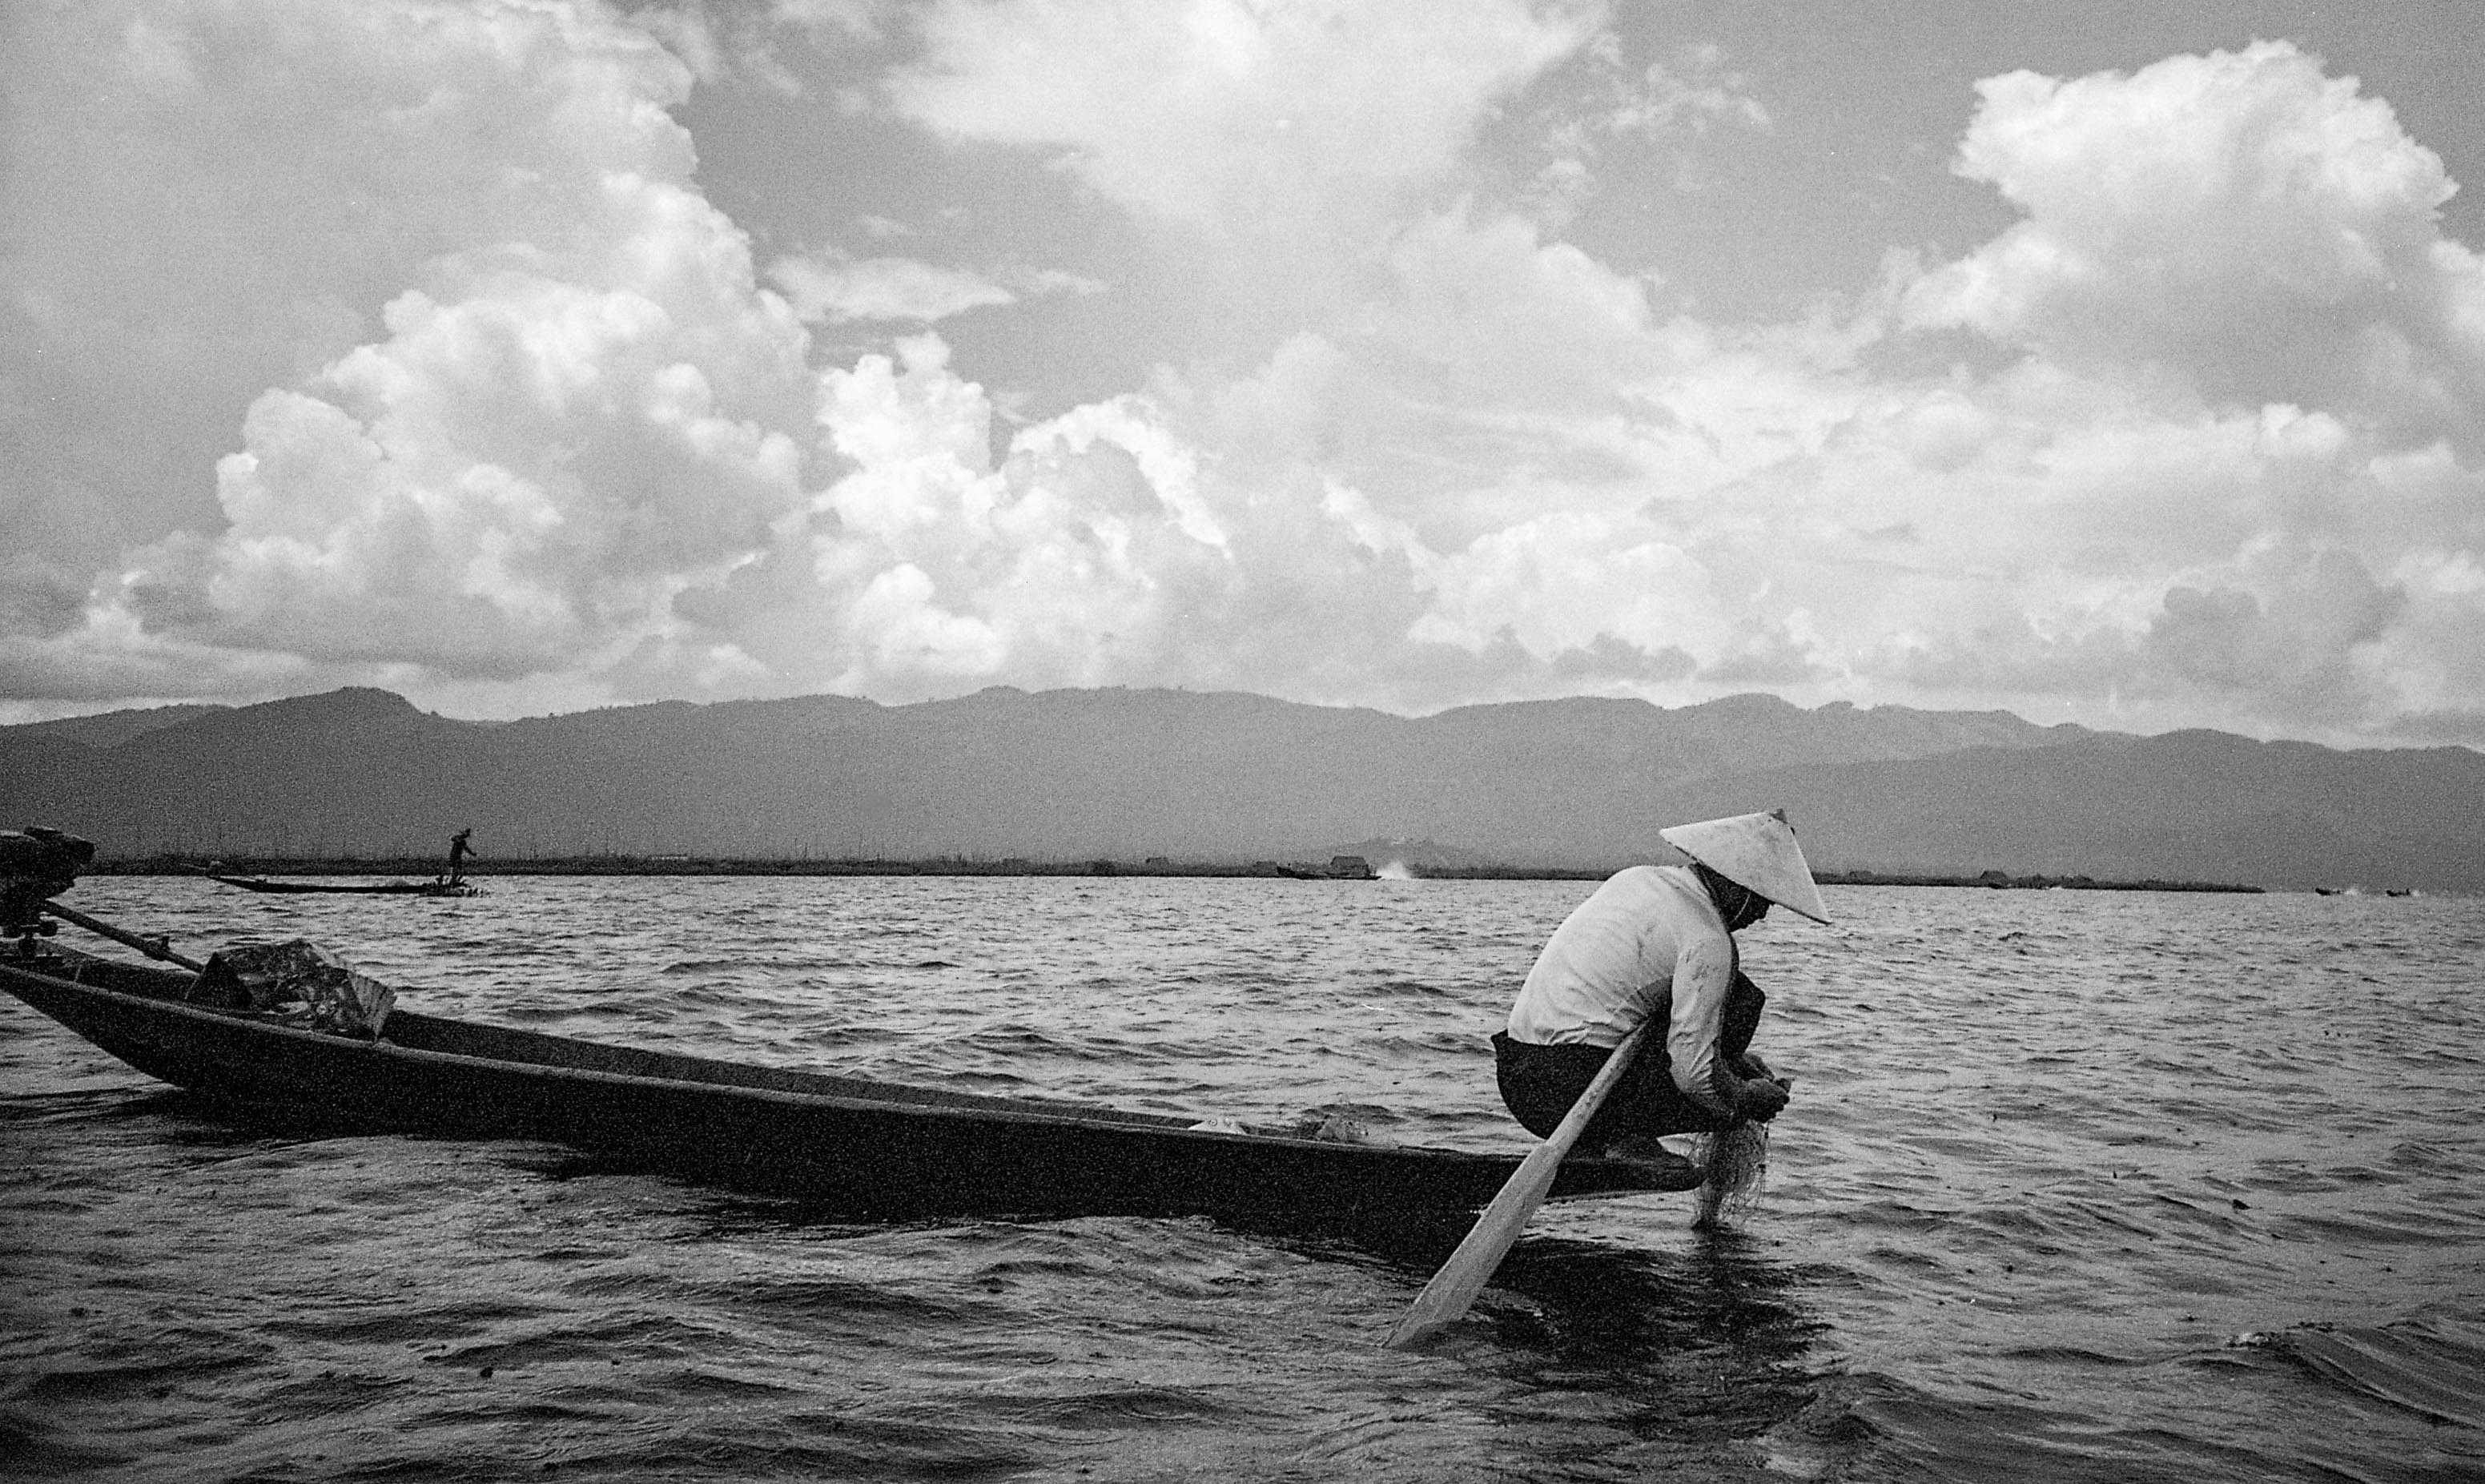 Birman fisherman